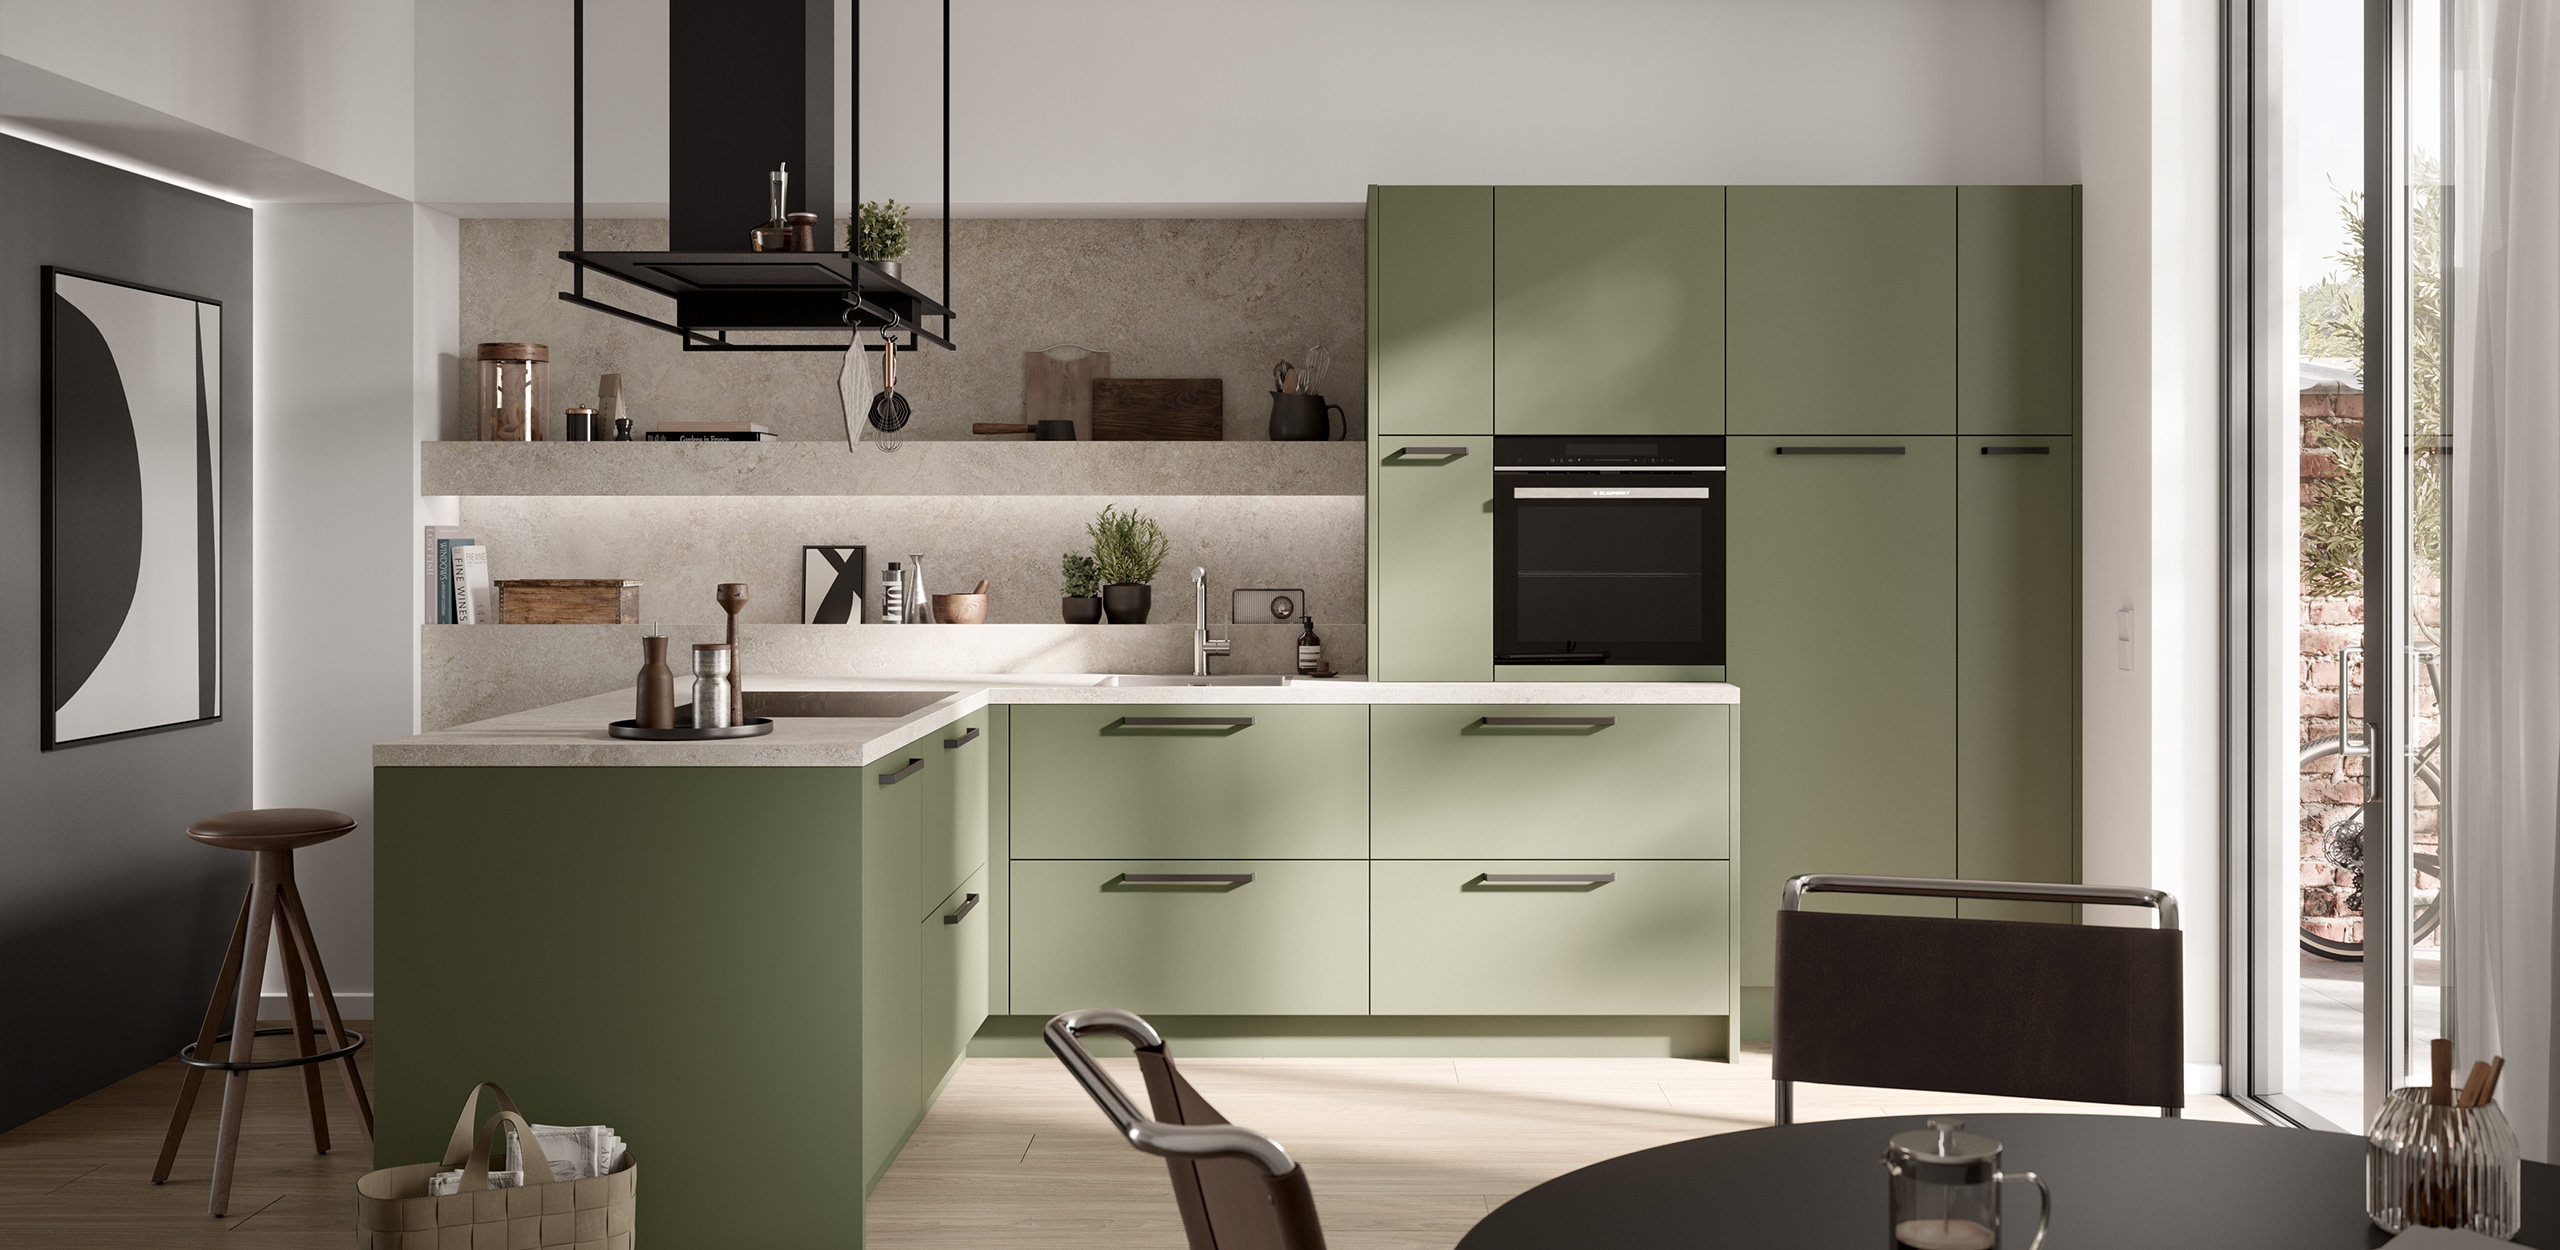 Bild der concept130 SCALA Olivgrün mit Küchenzeile, Hochschrank, olivgrünen Fronten und Küchentheke